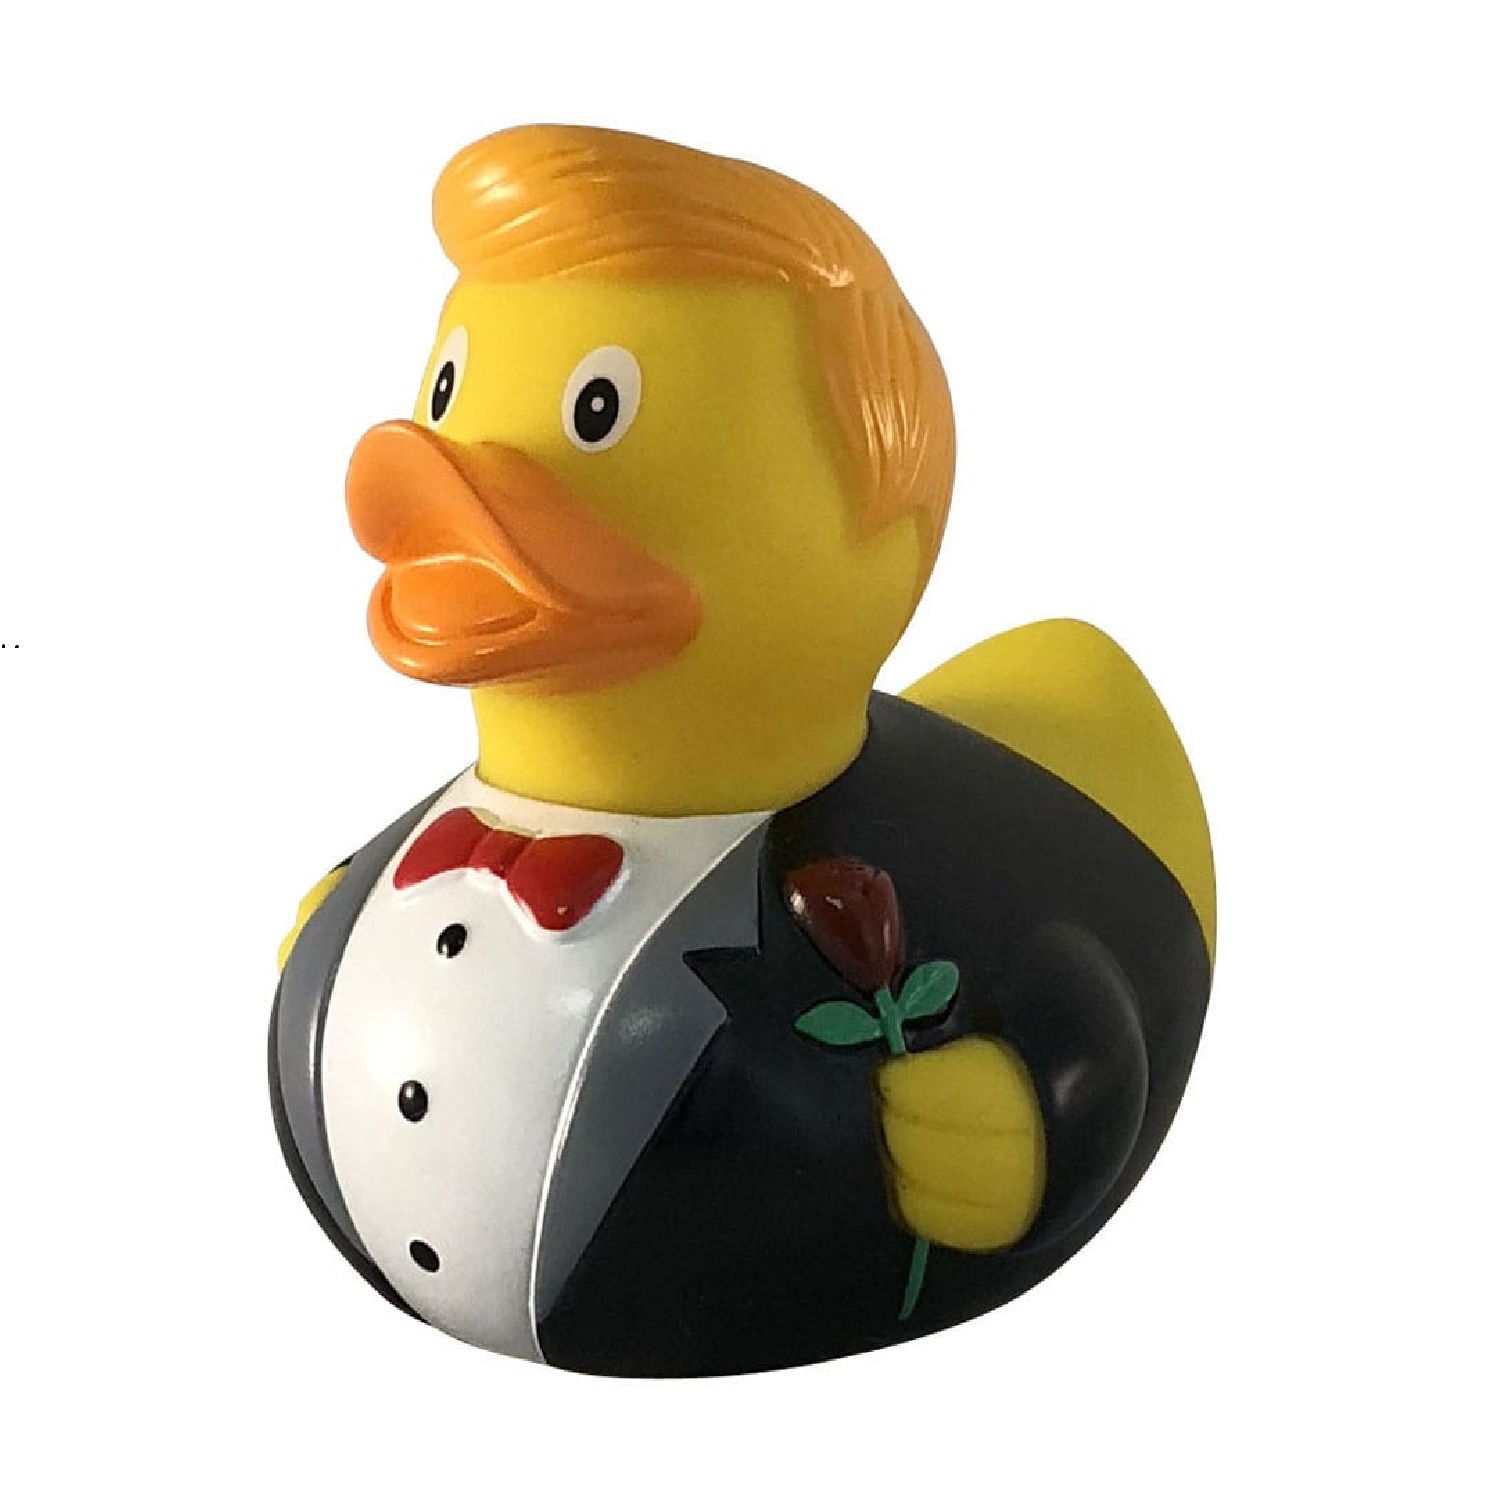 Игрушка Funny ducks для ванной Жених уточка 1823 - фото 1